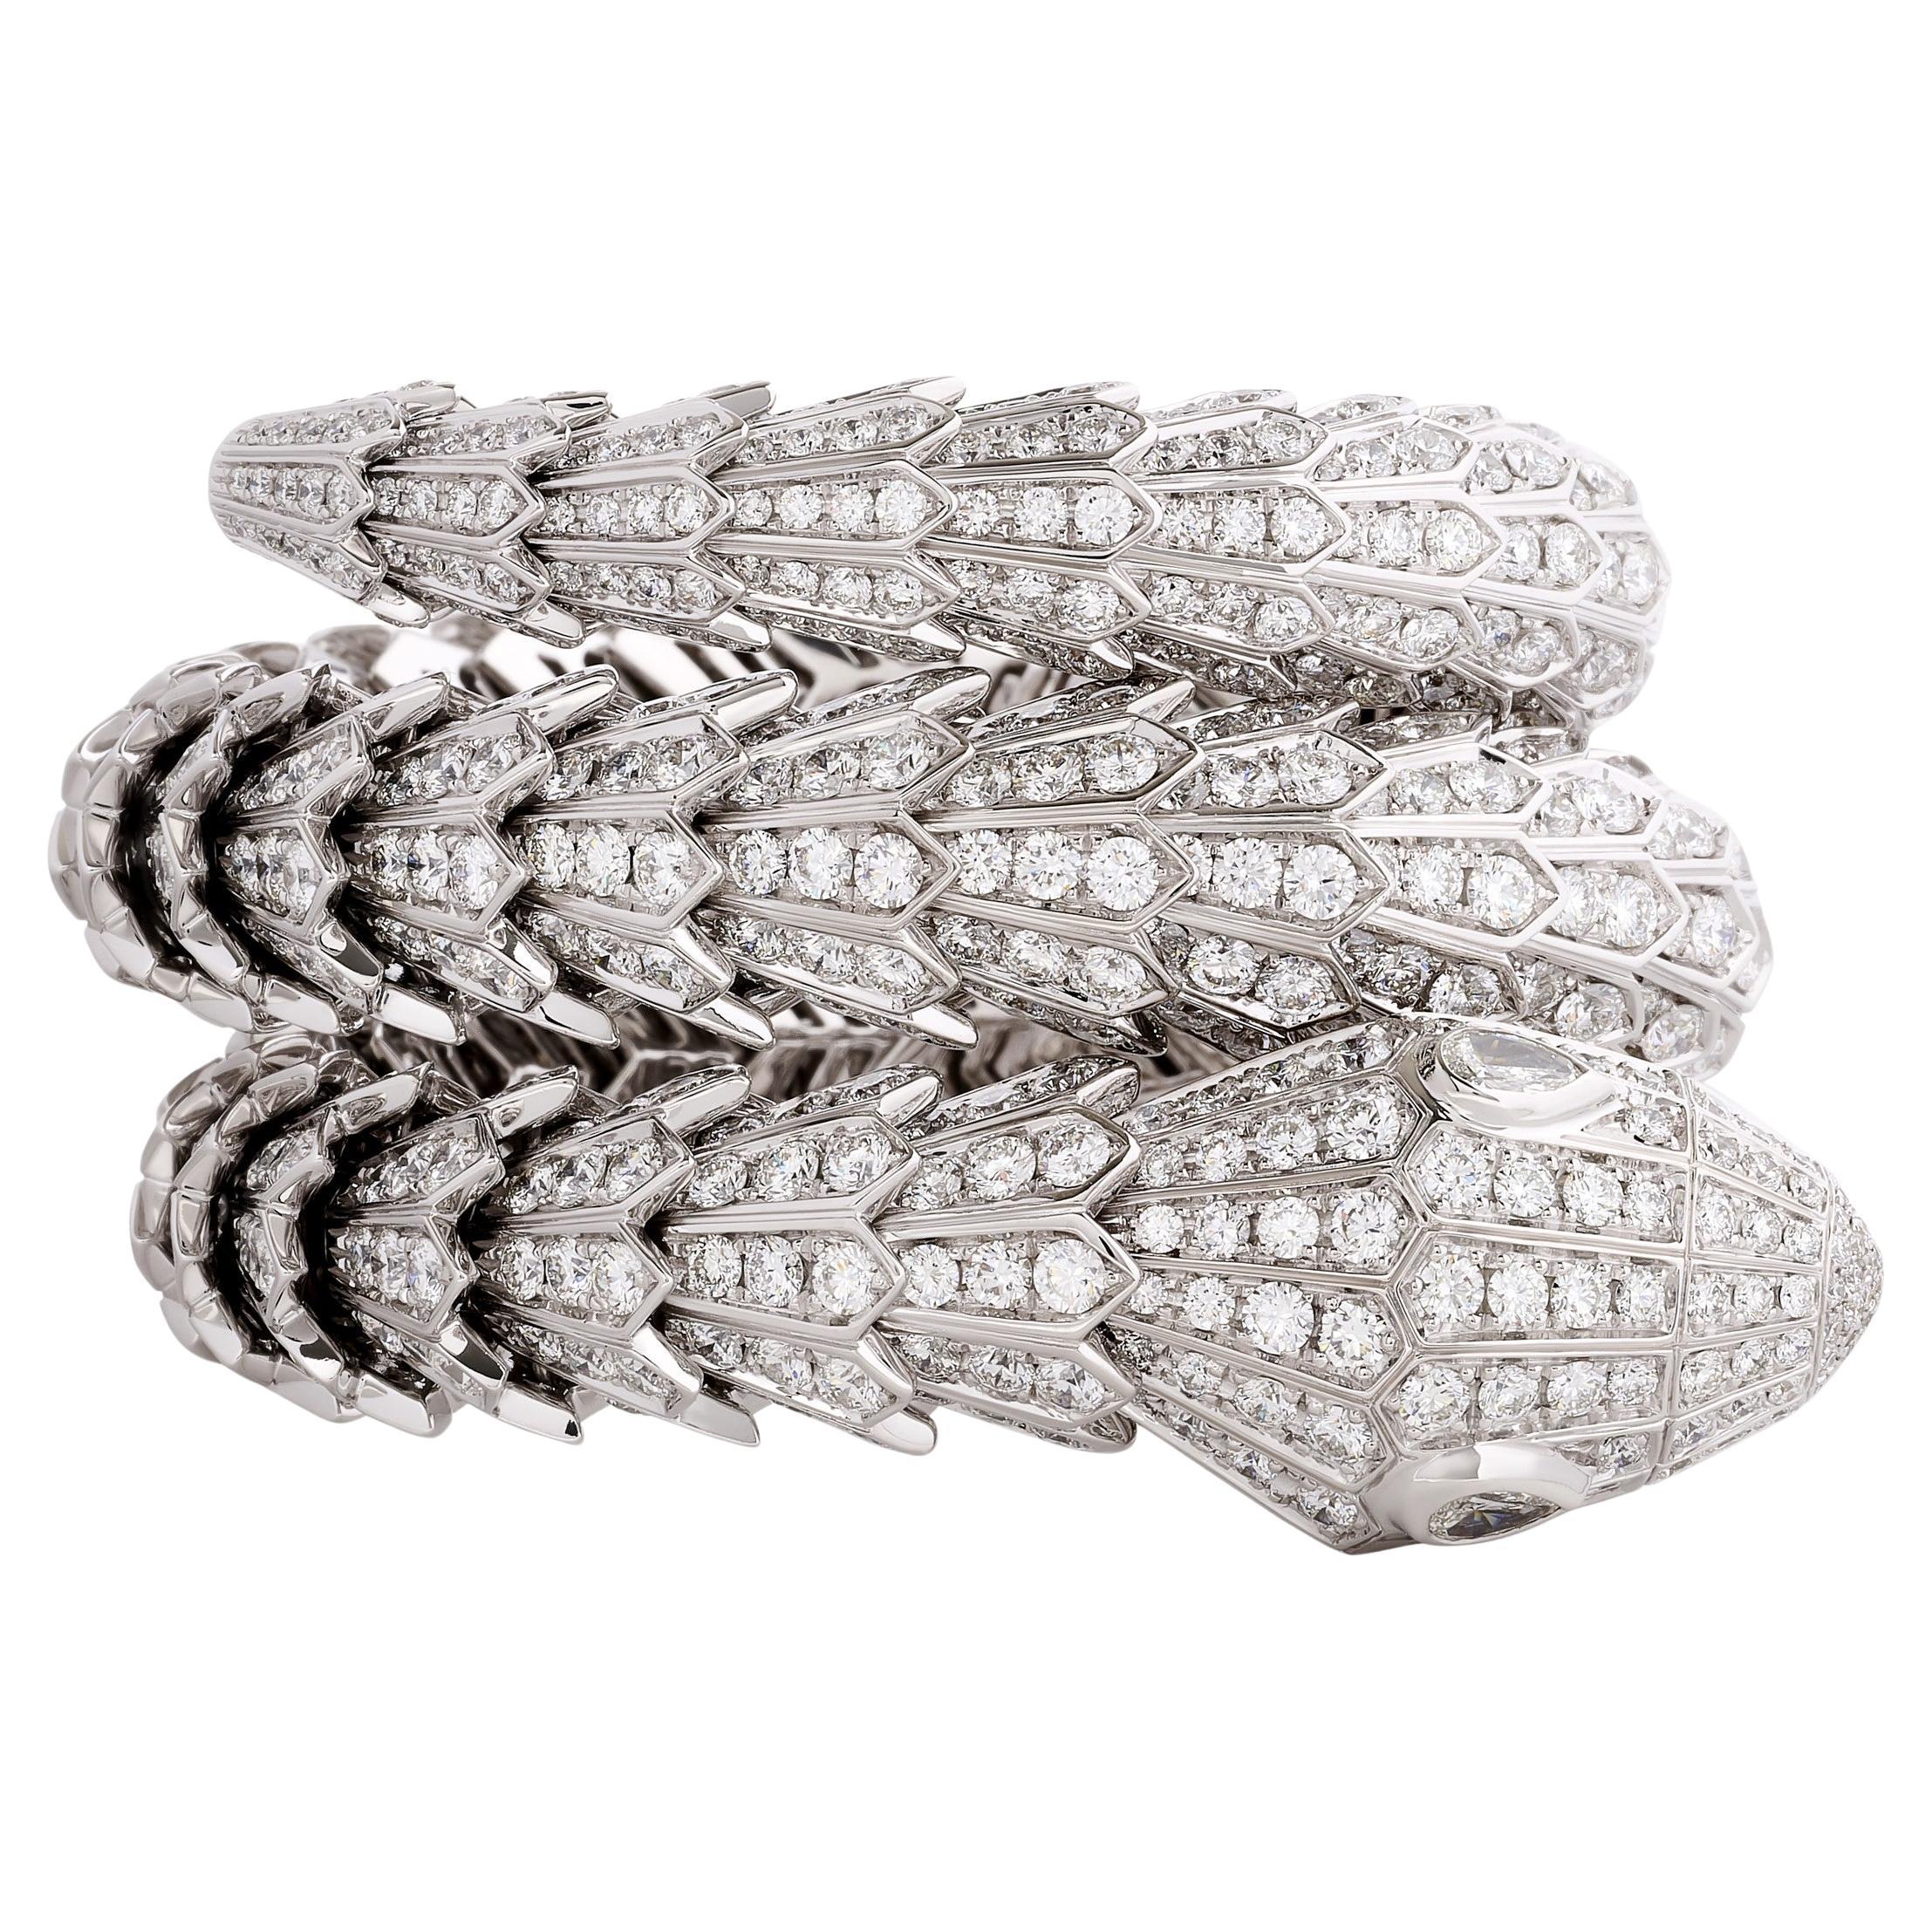 Bulgari Serpenti Diamond Snake Bracelet in 18k White Gold